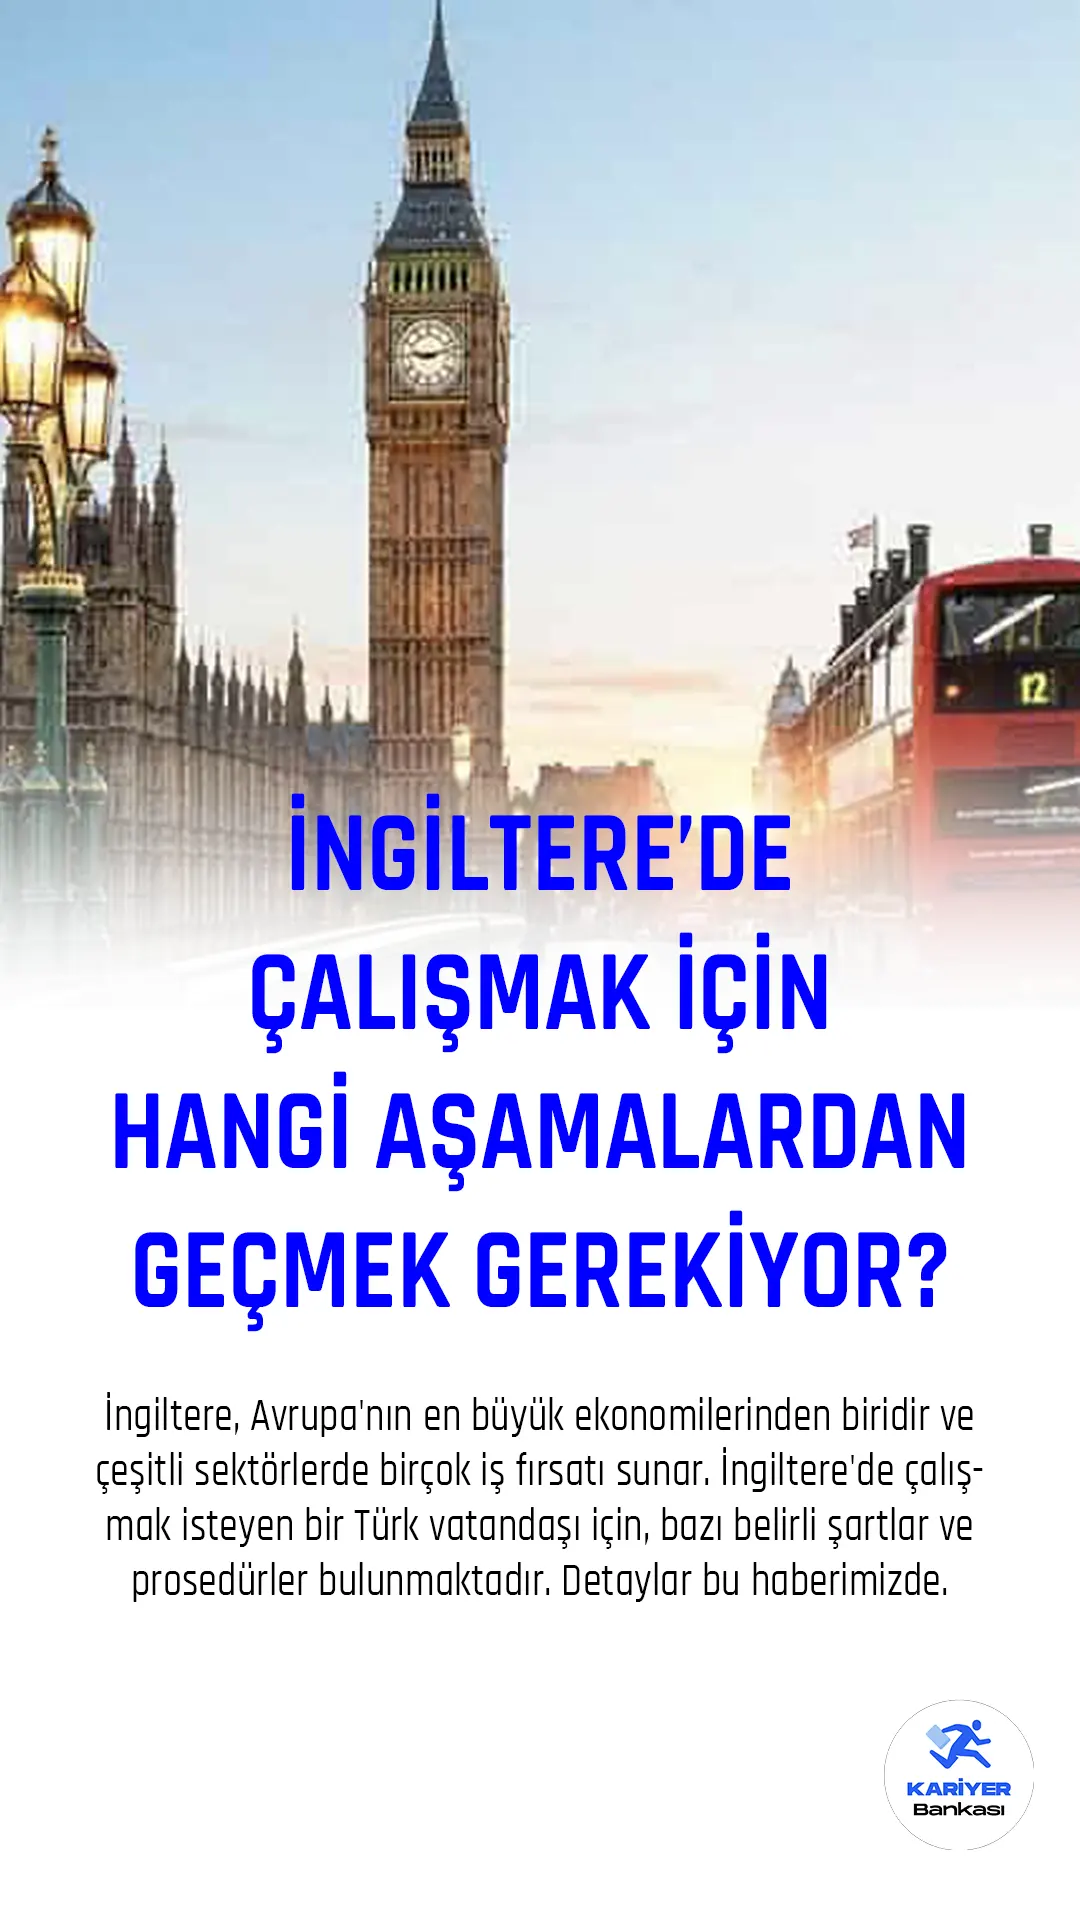 İngiltere, Avrupa'nın en büyük ekonomilerinden biridir ve çeşitli sektörlerde birçok iş fırsatı sunar. İngiltere'de çalışmak isteyen bir Türk vatandaşı için, bazı belirli şartlar ve prosedürler bulunmaktadır.